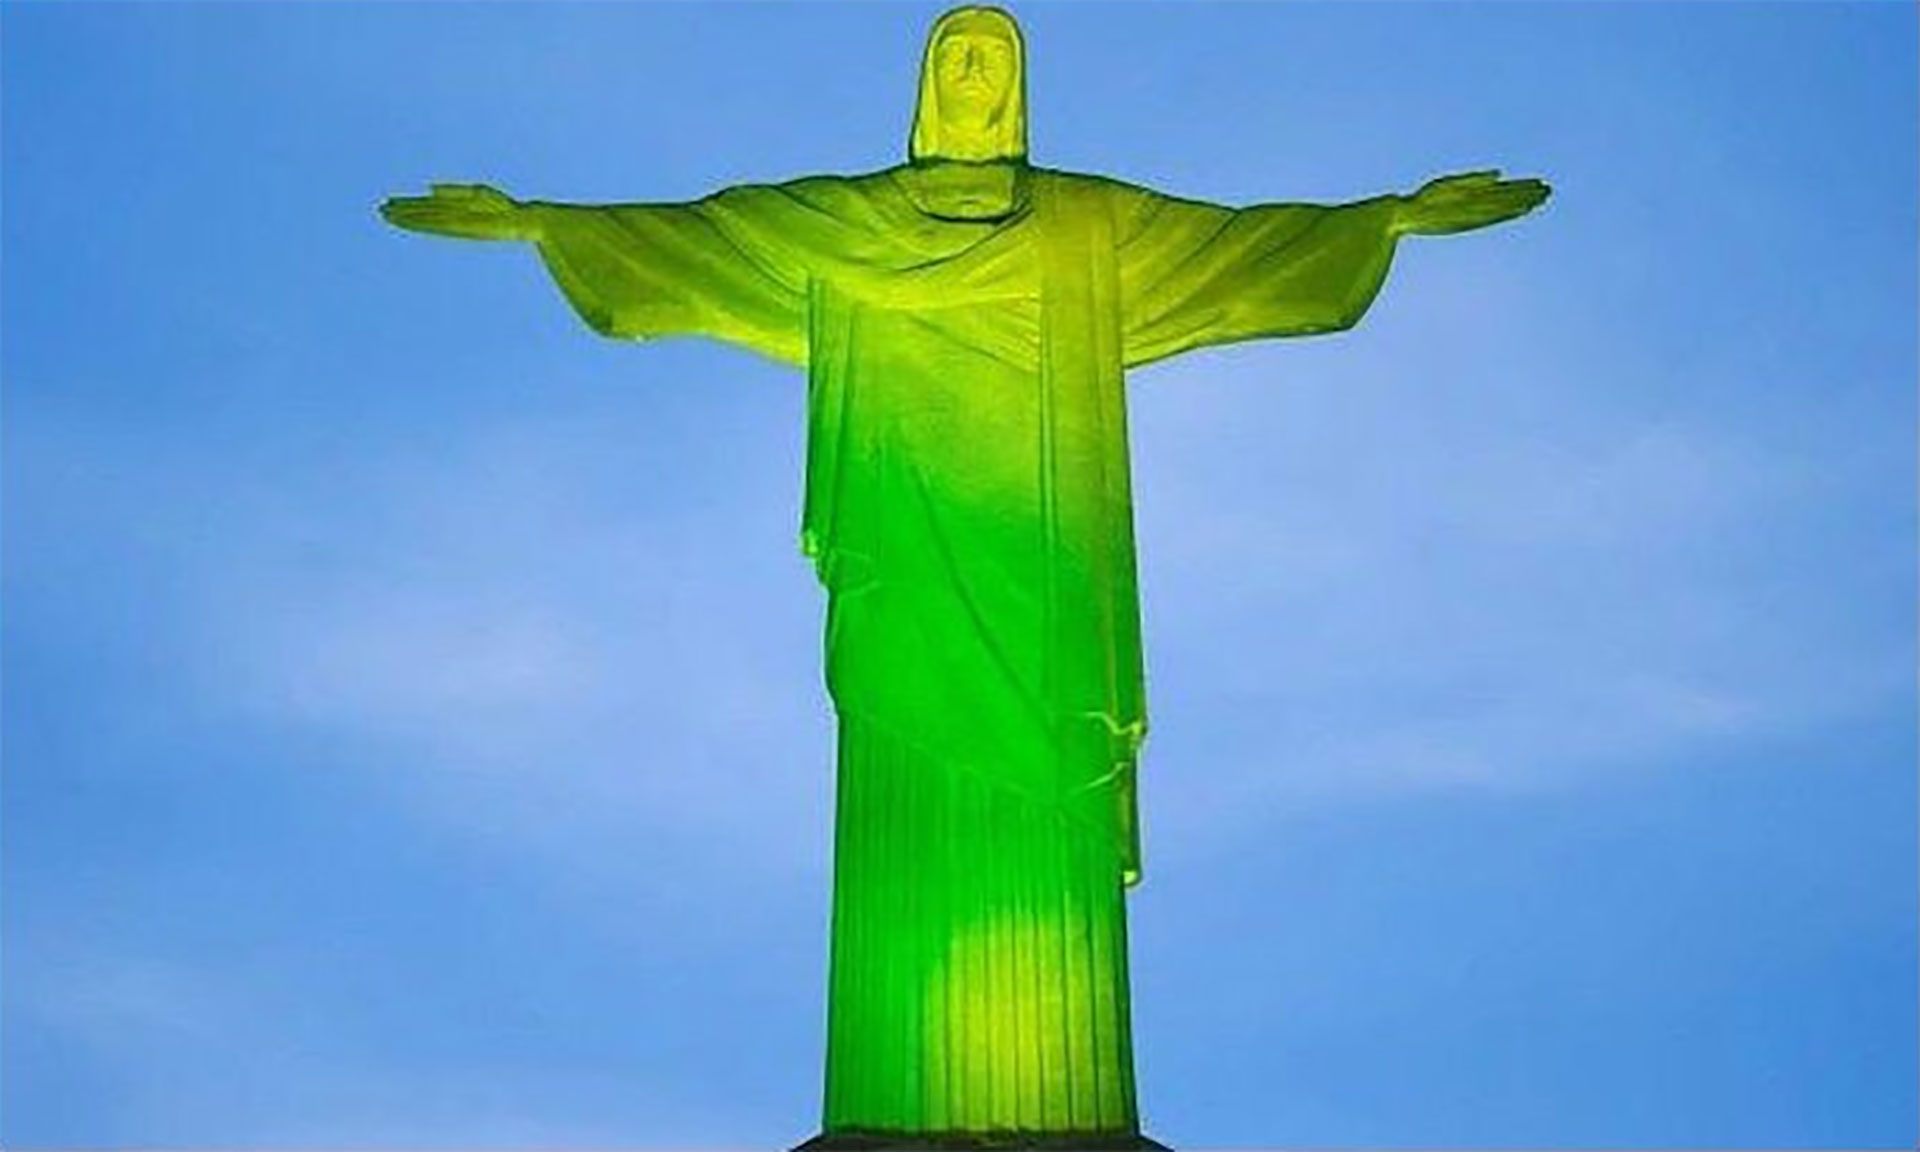 chapecoense wallpaper,green,landmark,statue,monument,sky